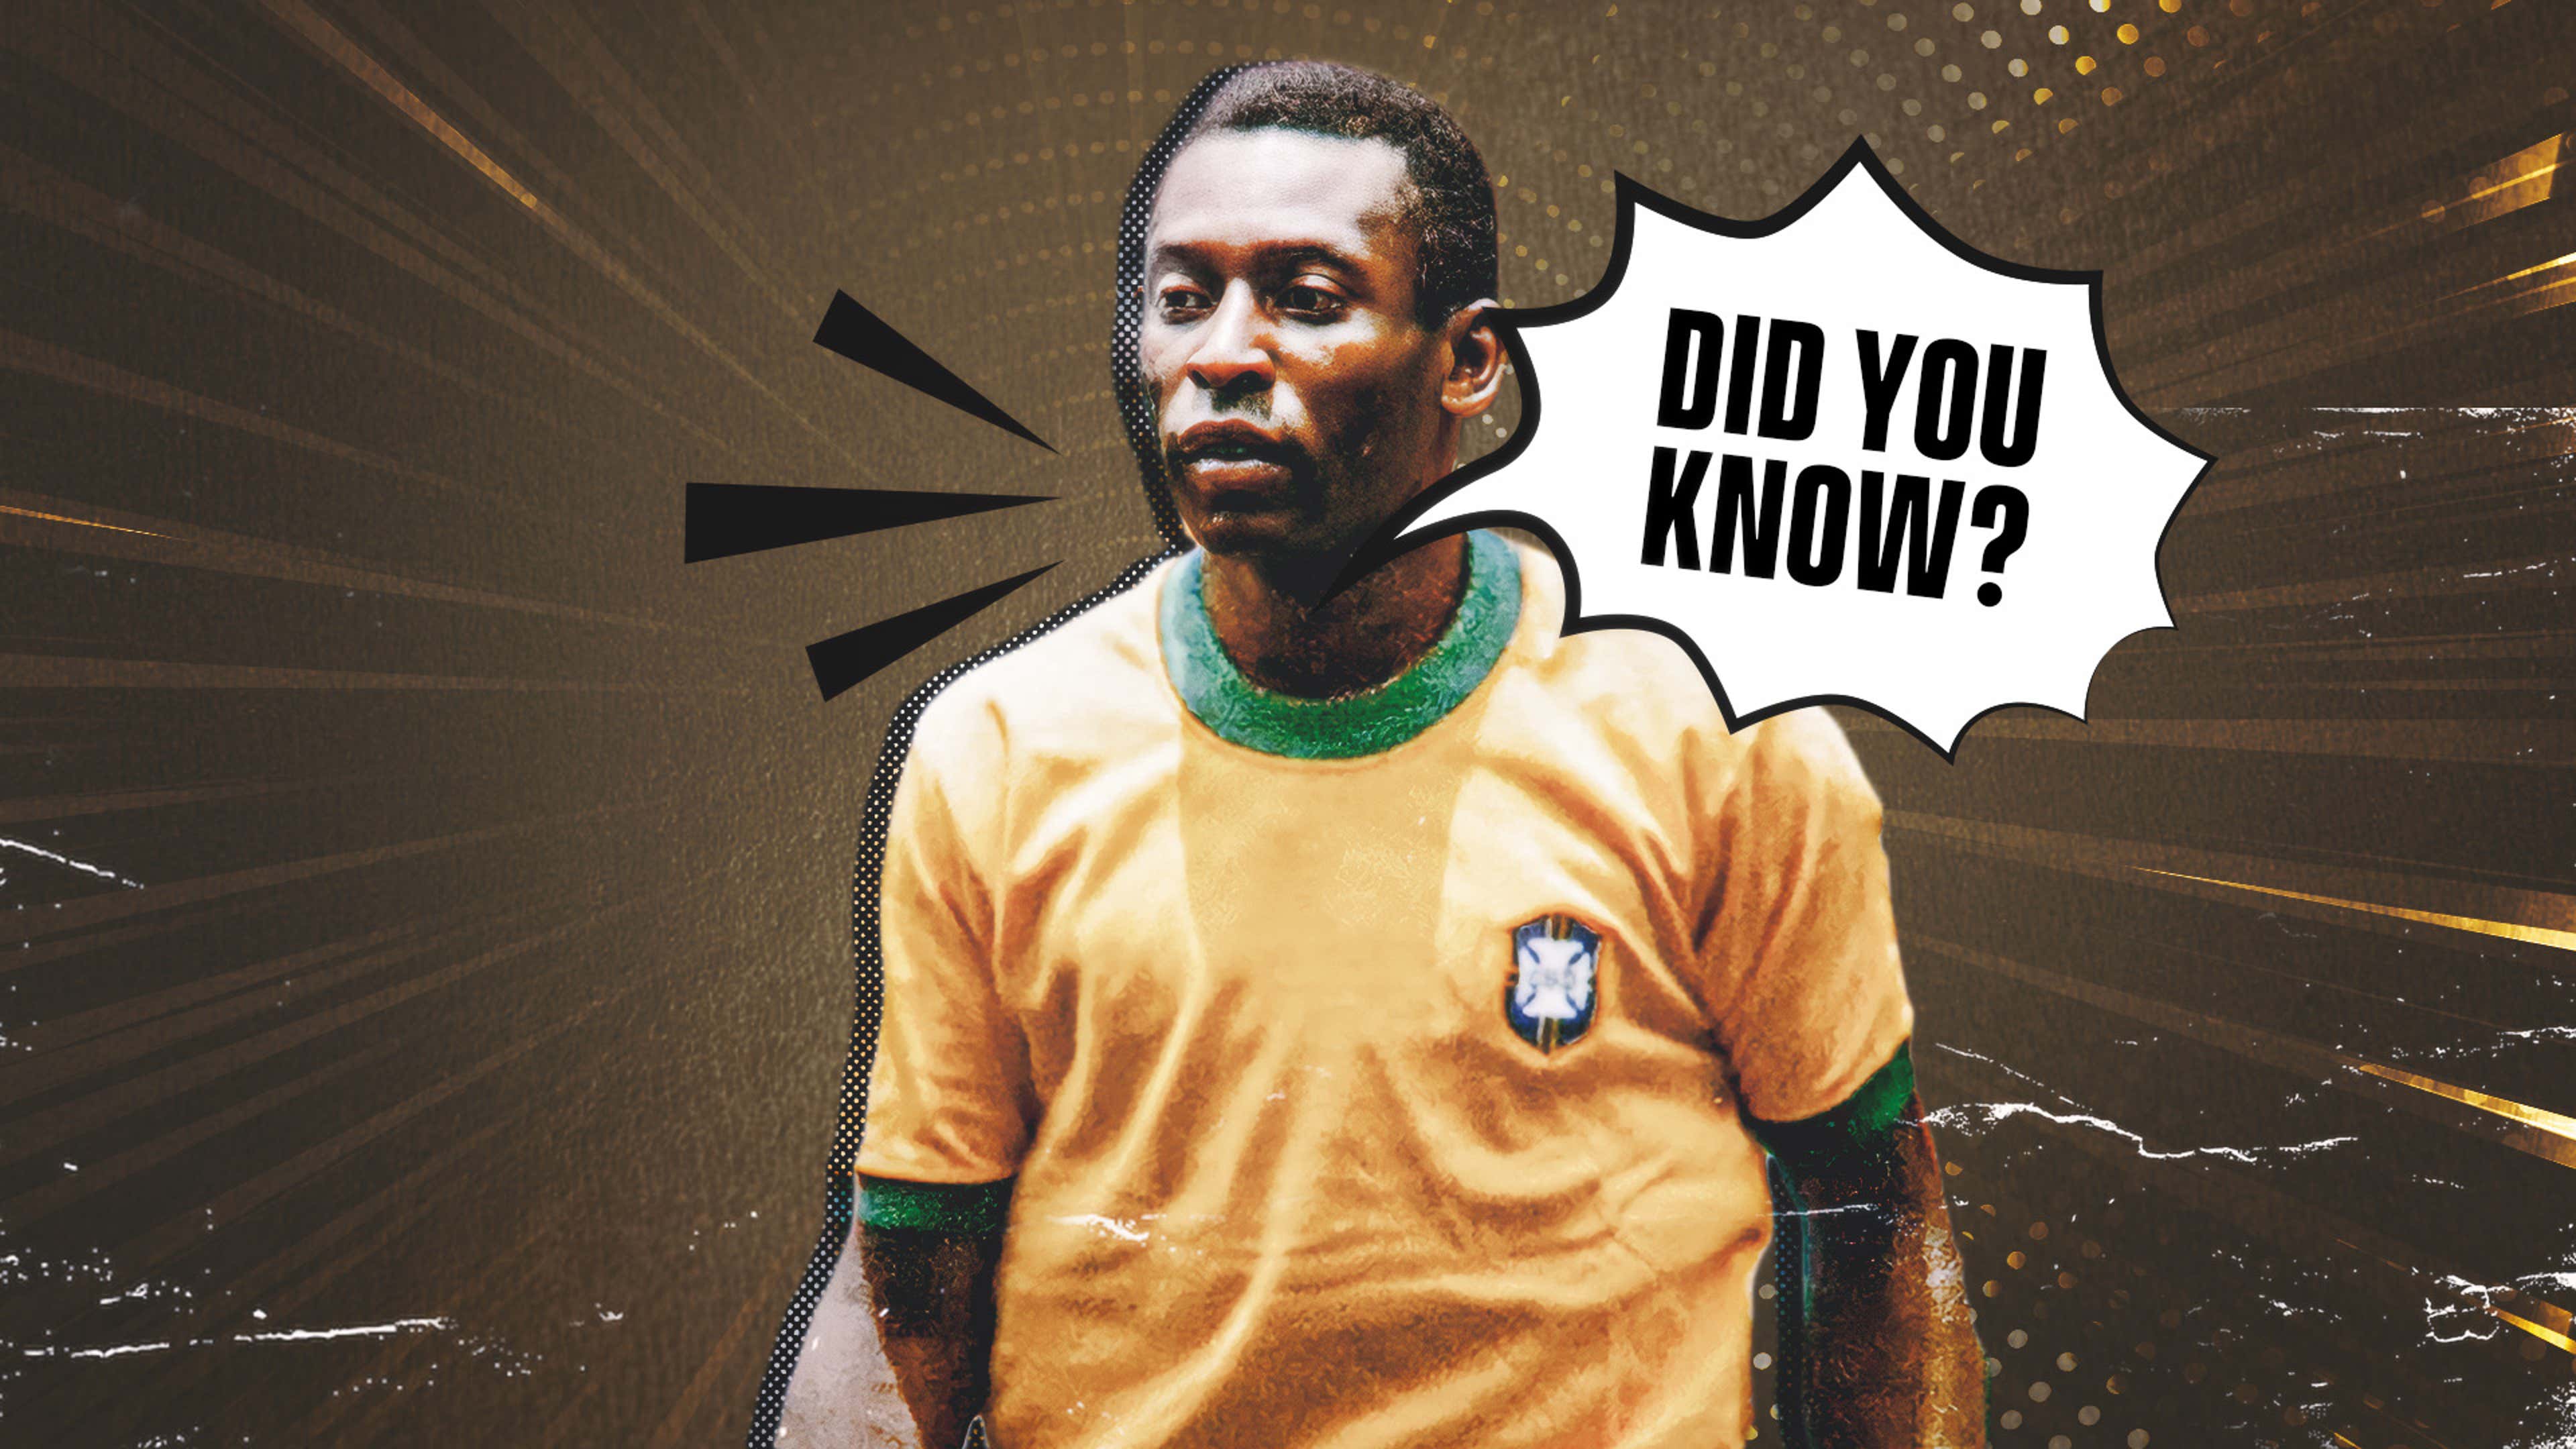 70 facts about Brazil legend Pele